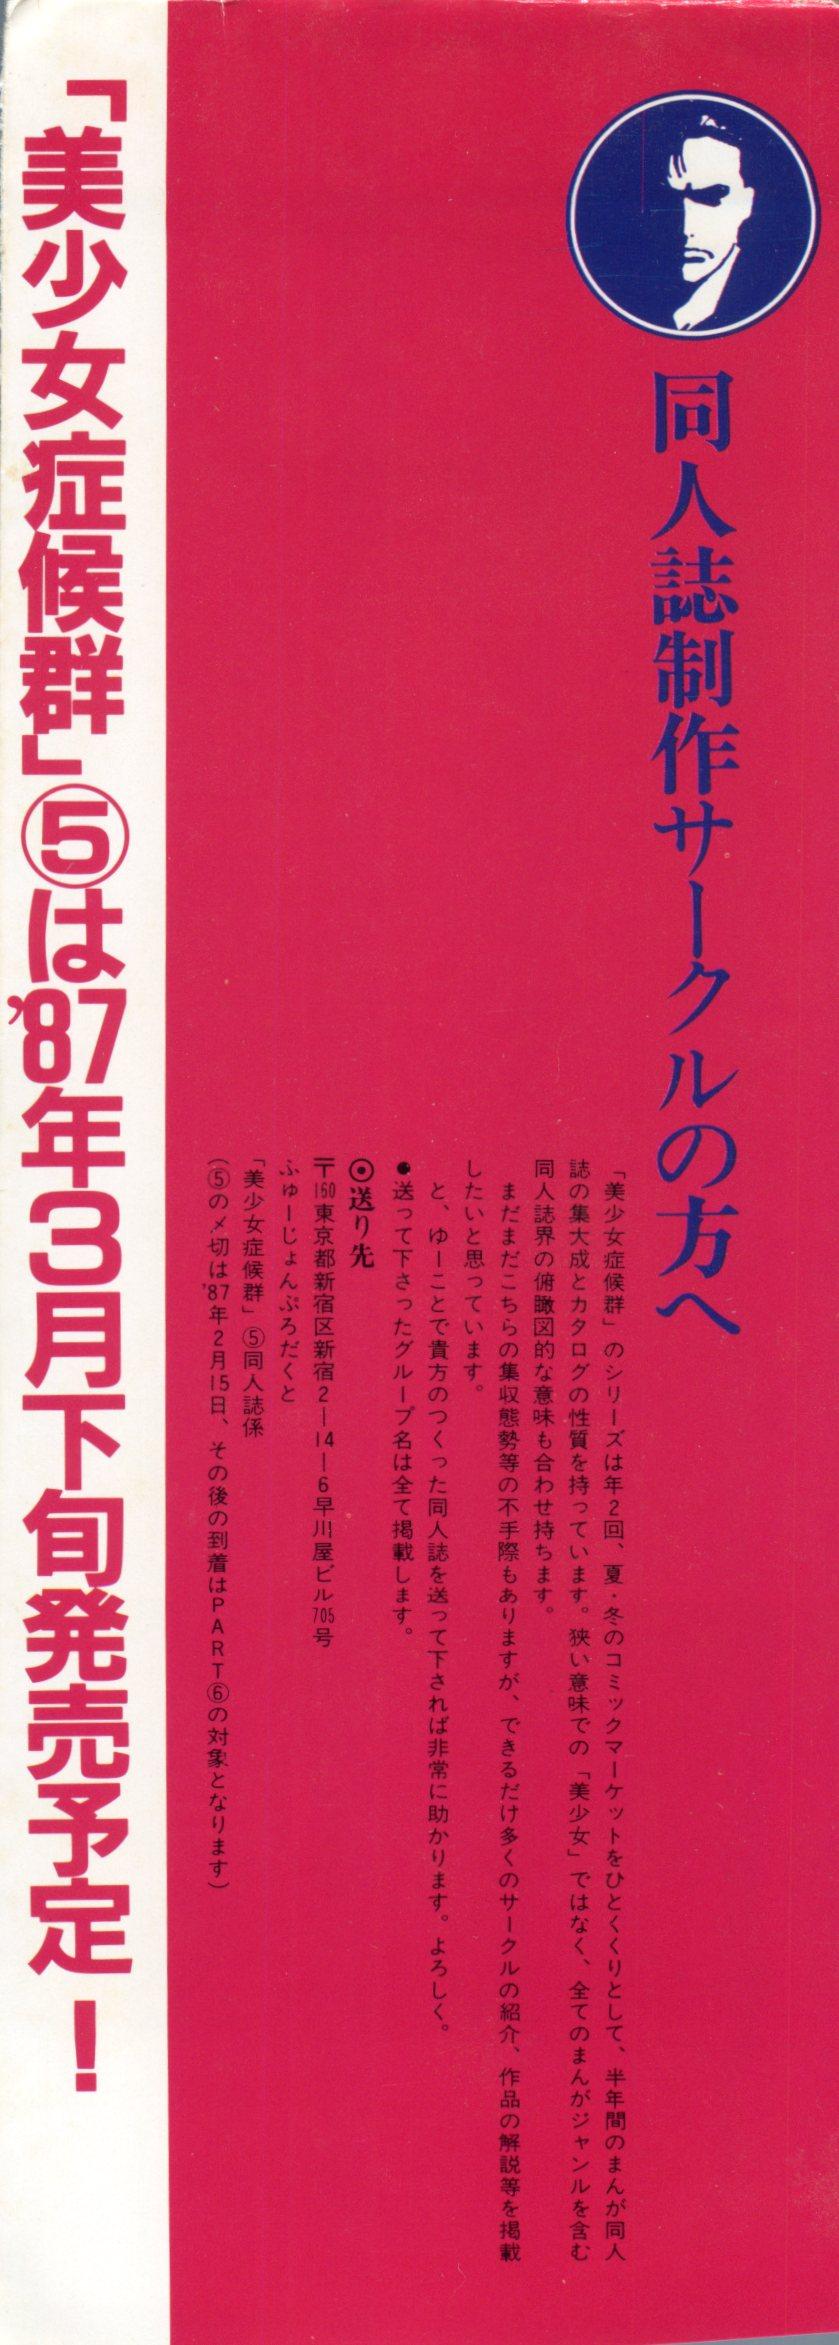 Room Bishoujo Shoukougun Lolita Syndrome 4 - Urusei yatsura Dirty pair Forbidden - Page 3